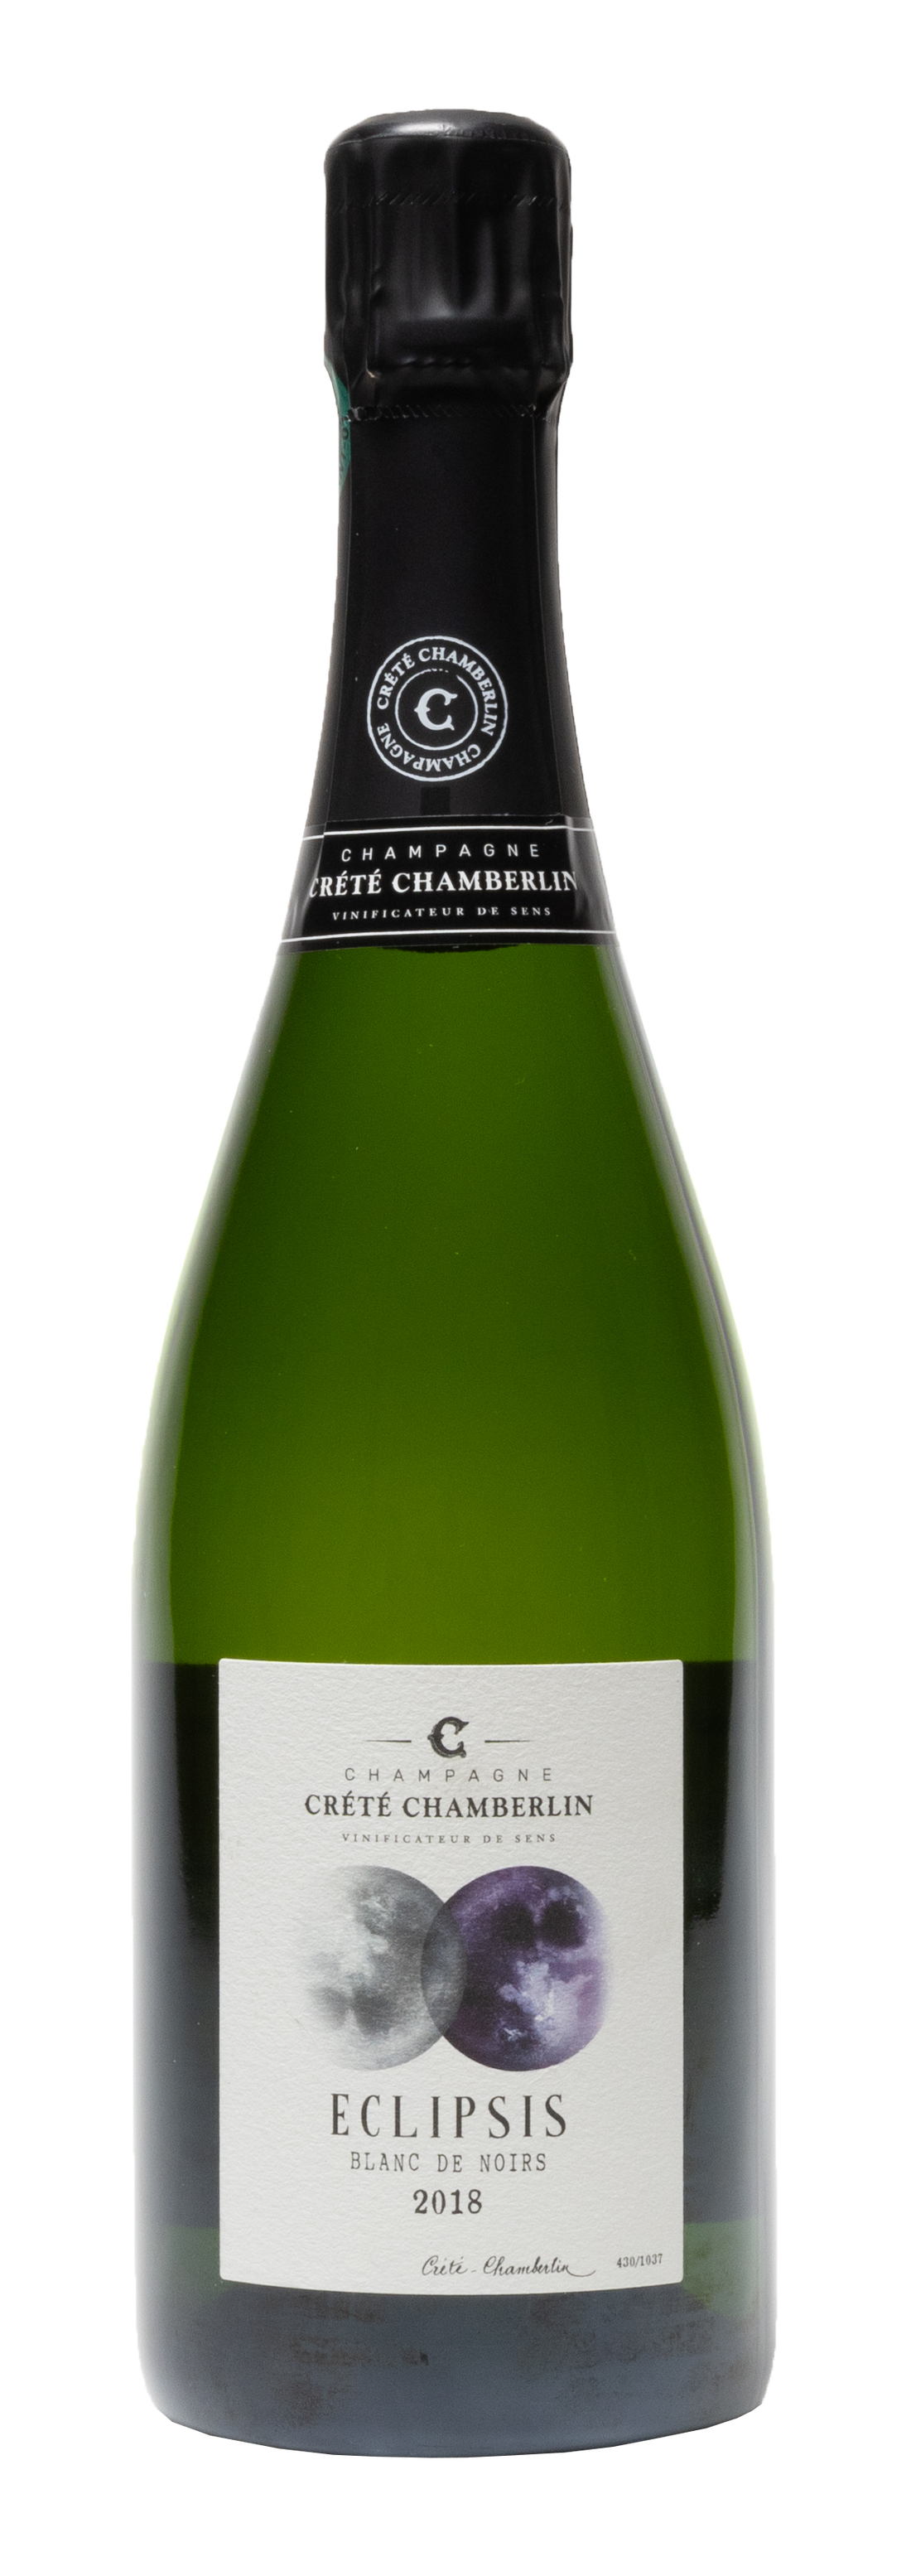 Crete Chamberlin Eclipsis Blanc de Noirs Champagner Pinot Meunier Schaumwein